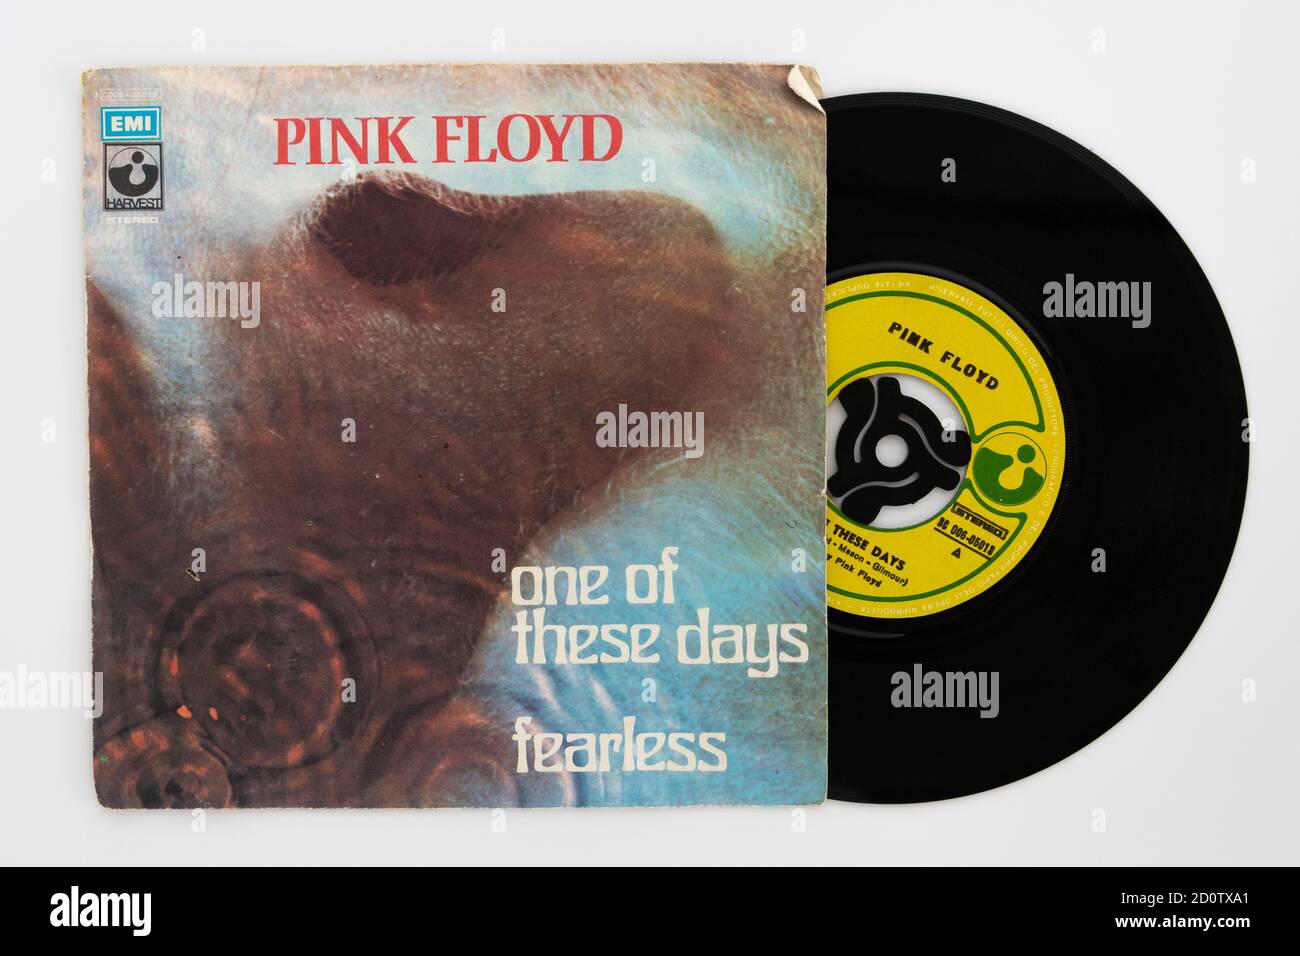 Pink Floyd - uno di questi giorni - vinile 7' Record singolo